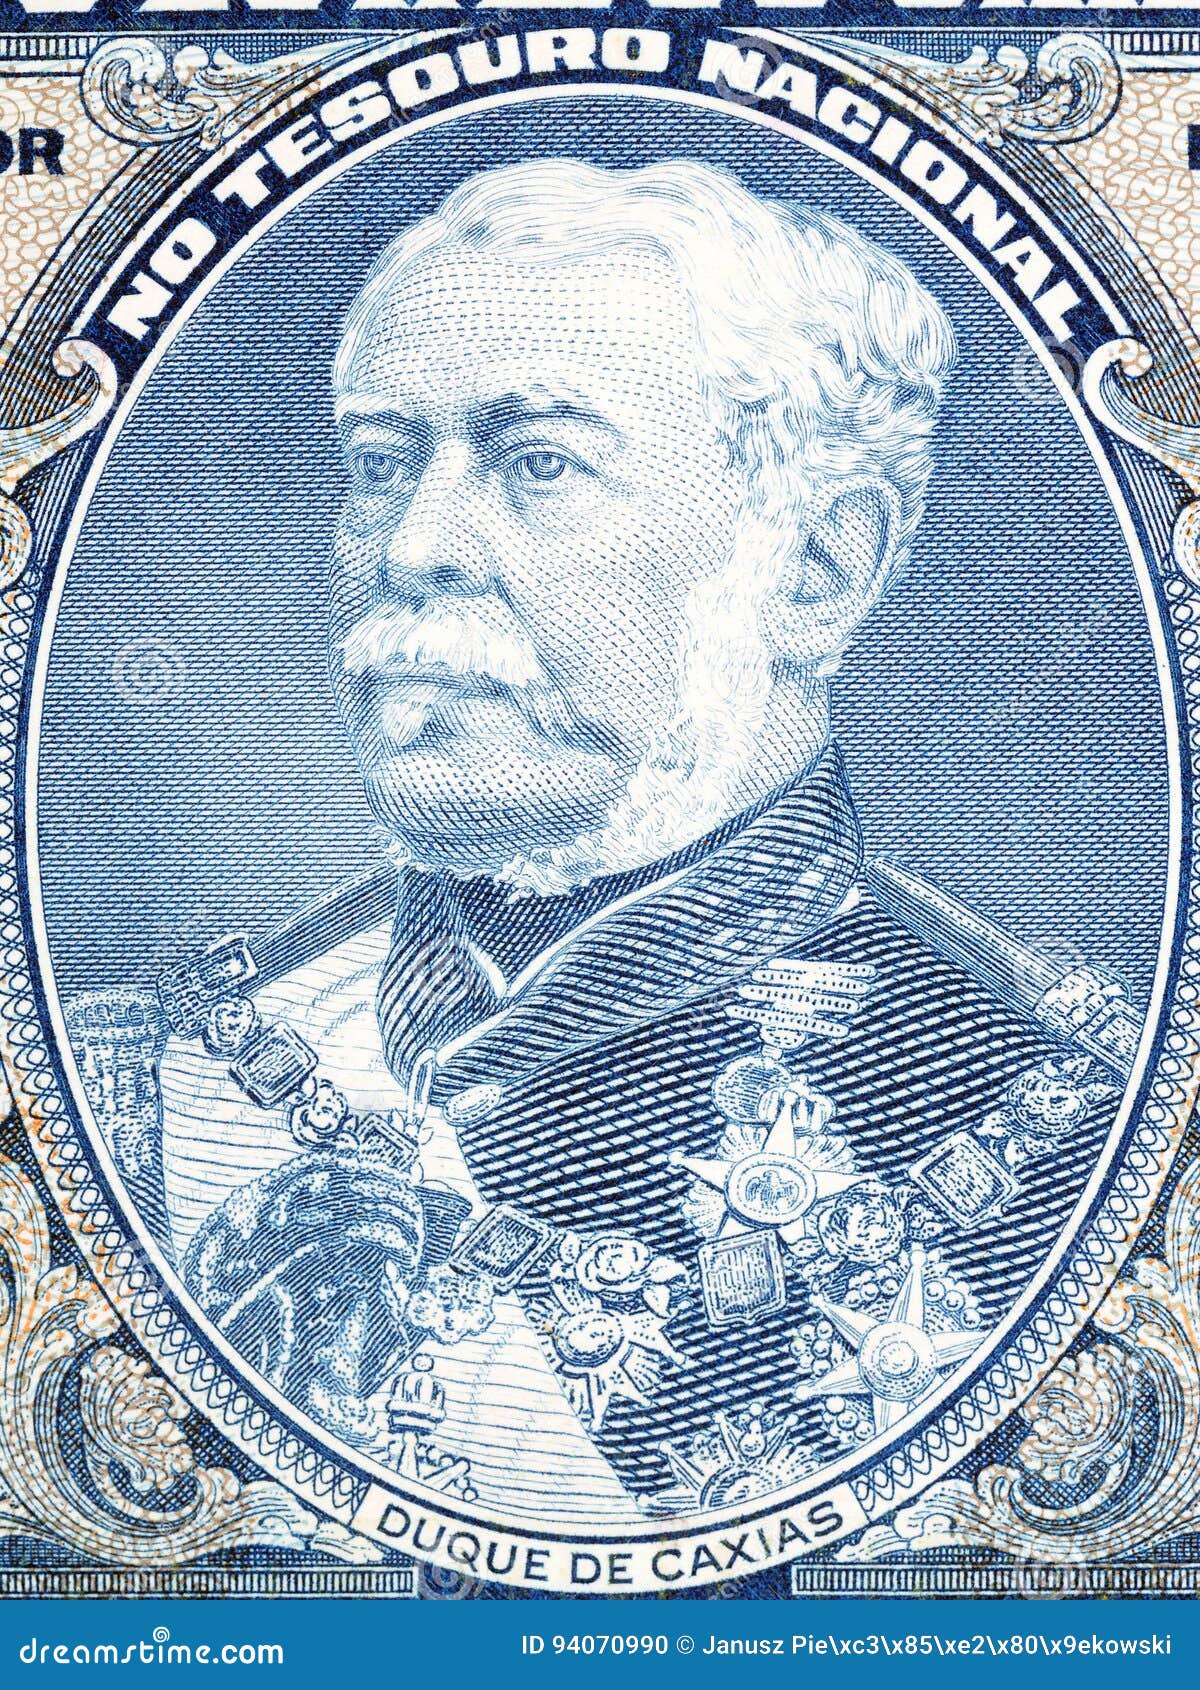 duke of caxias portrait